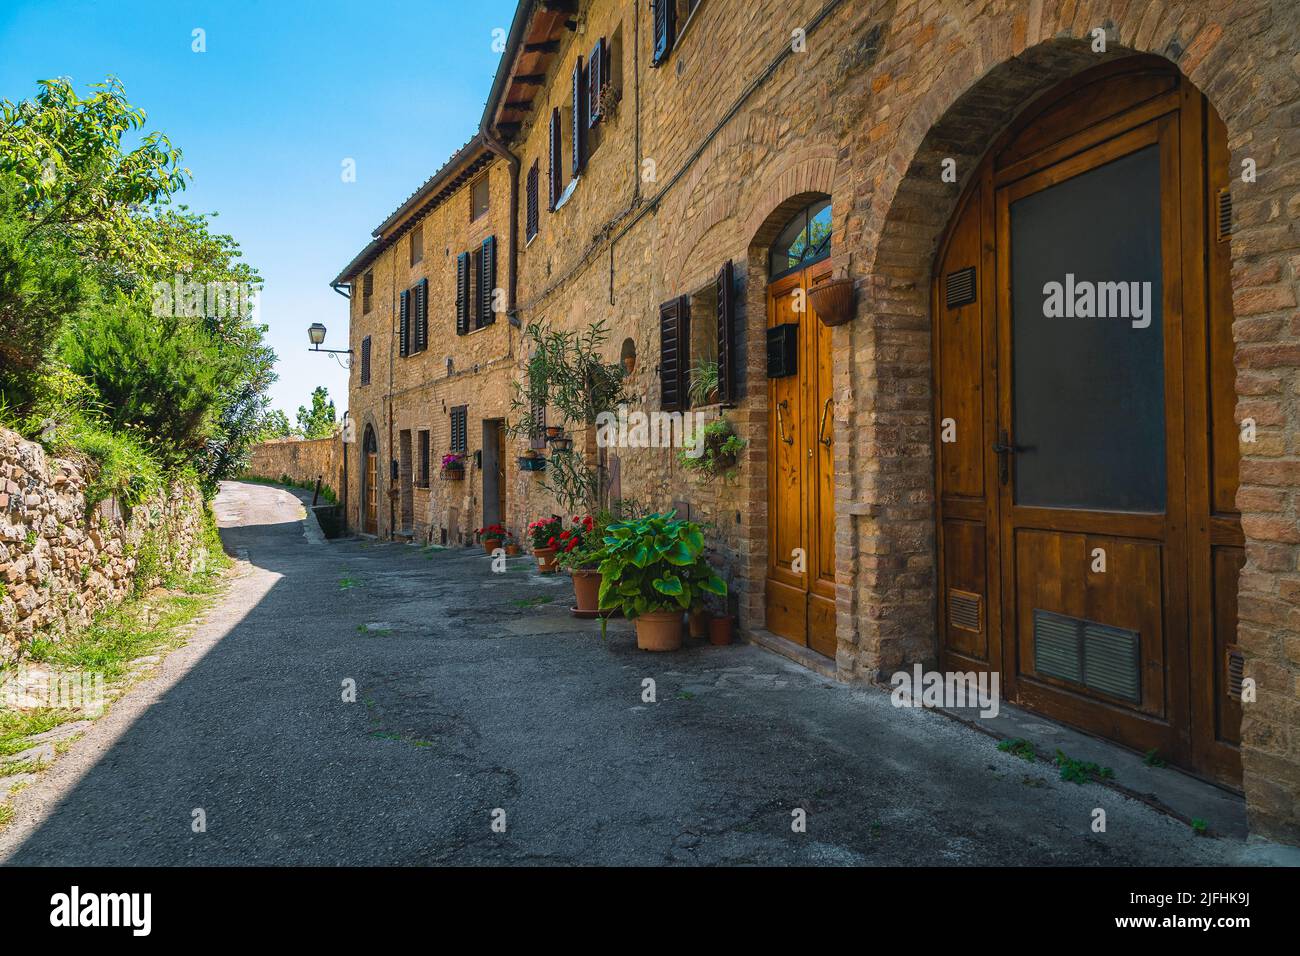 Maisons en briques toscanes rustiques et entrées confortables décorées de fleurs colorées. Vue fantastique sur la rue à San Gimignano, Toscane, Italie, Europe Banque D'Images